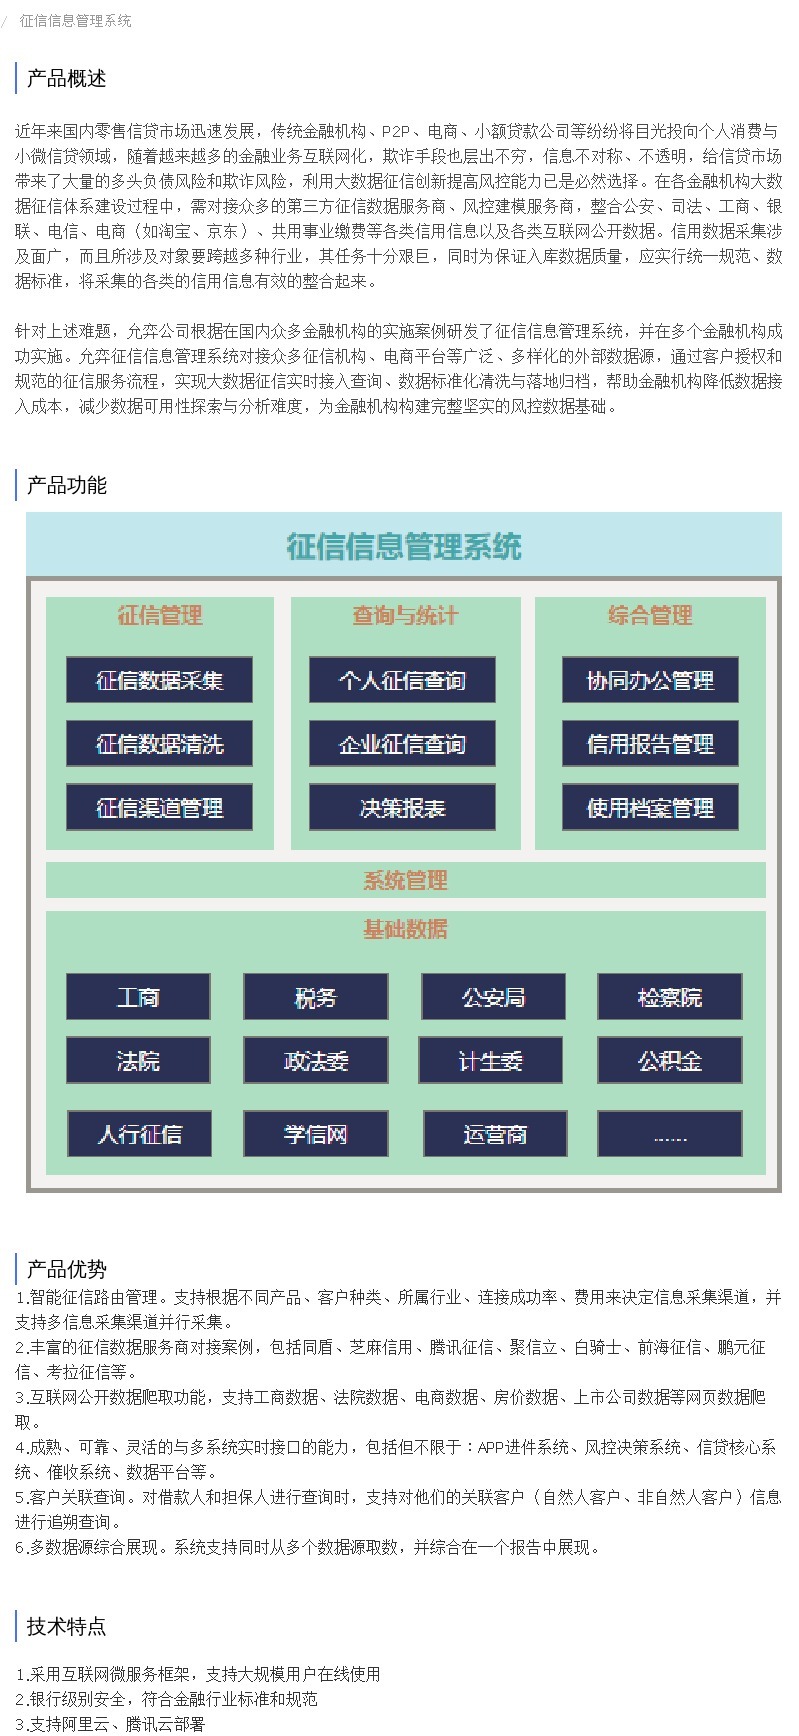 企服商城, 征信信息管理系统,上海允弈信息科技